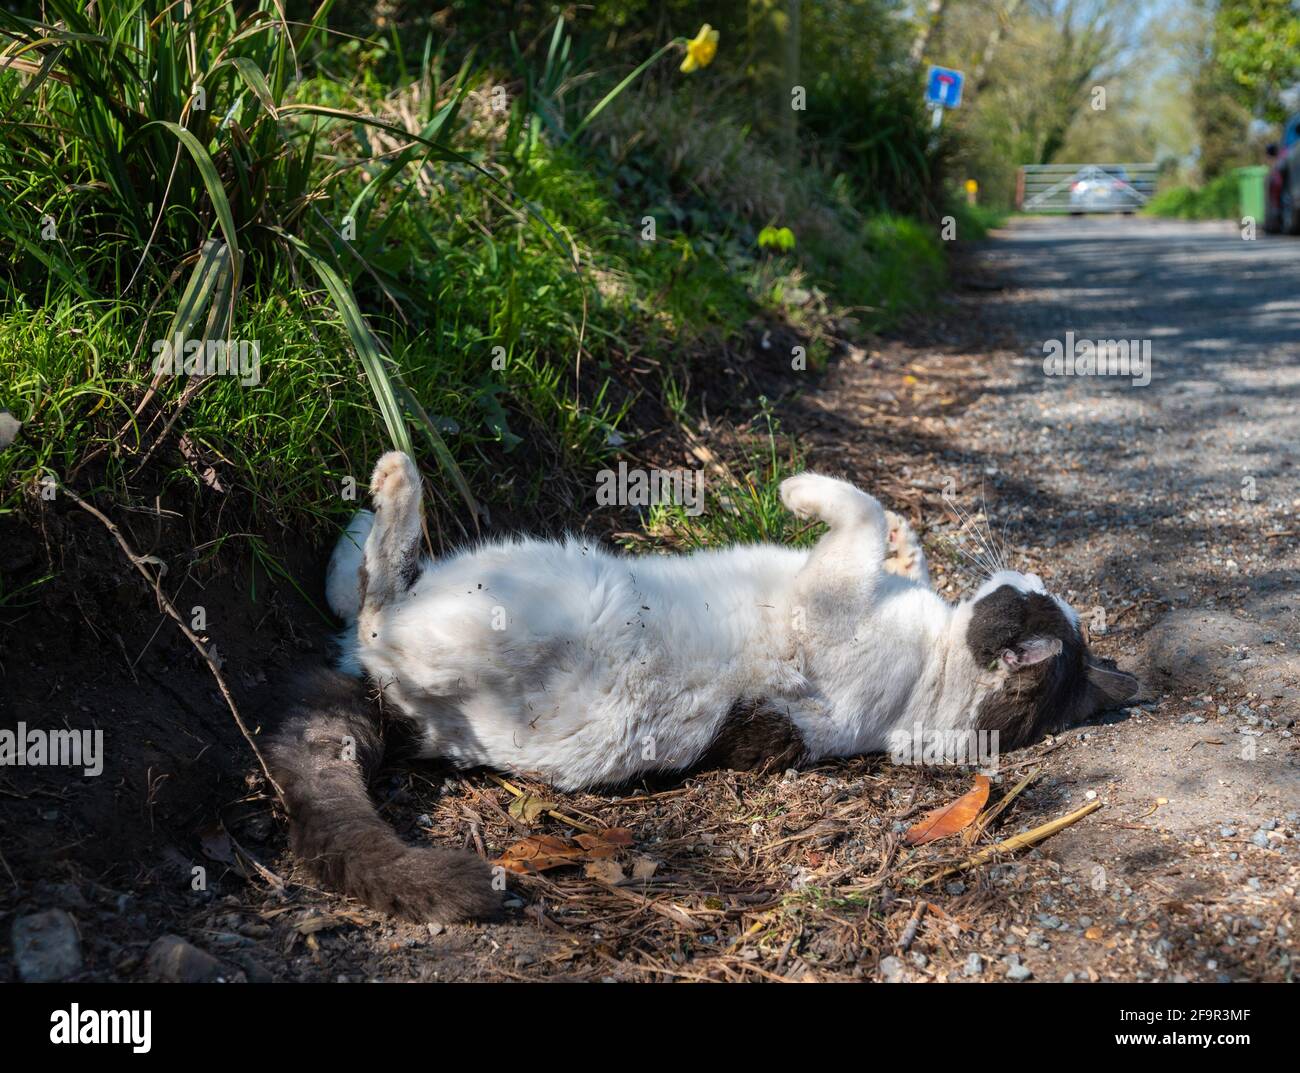 Weiße und braune Hauskatze, die am Straßenrand in England, Großbritannien, auf dem Boden liegt und herumrollt und mit ihren Pfoten in der Luft Aufmerksamkeit sucht. Stockfoto